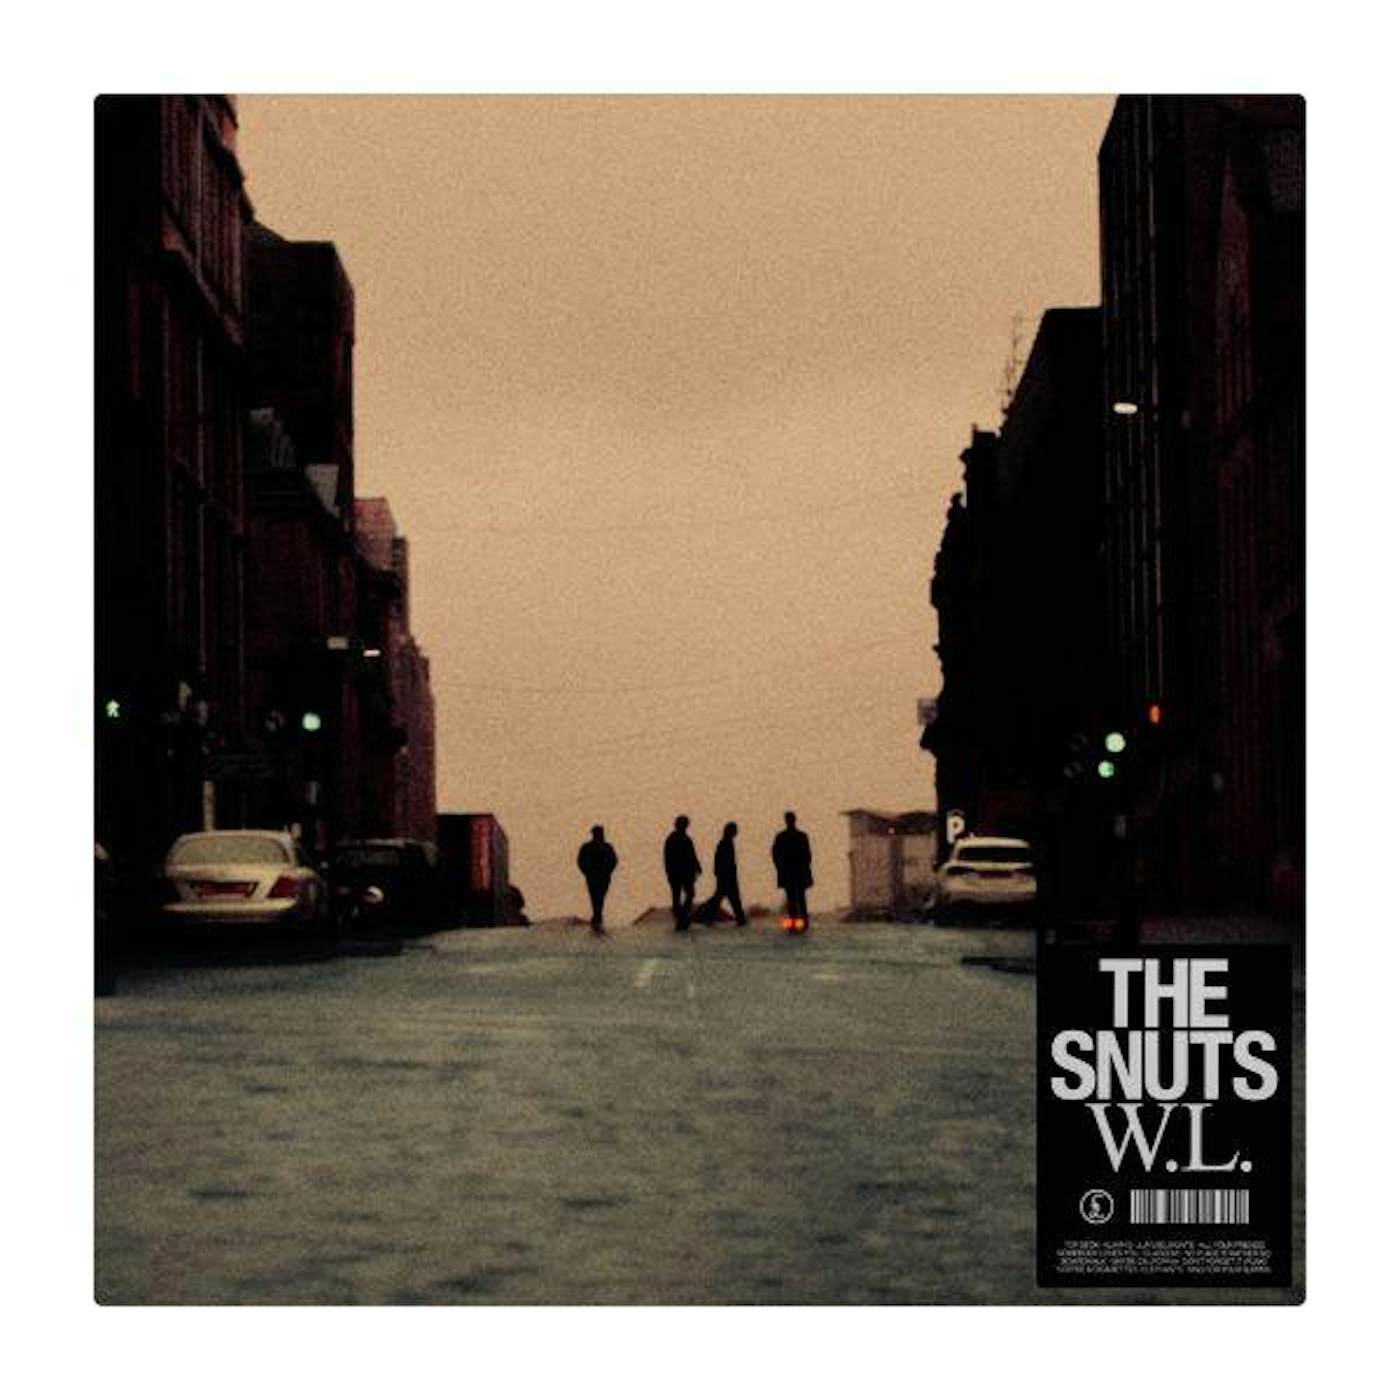 The Snuts W.L. Vinyl Record